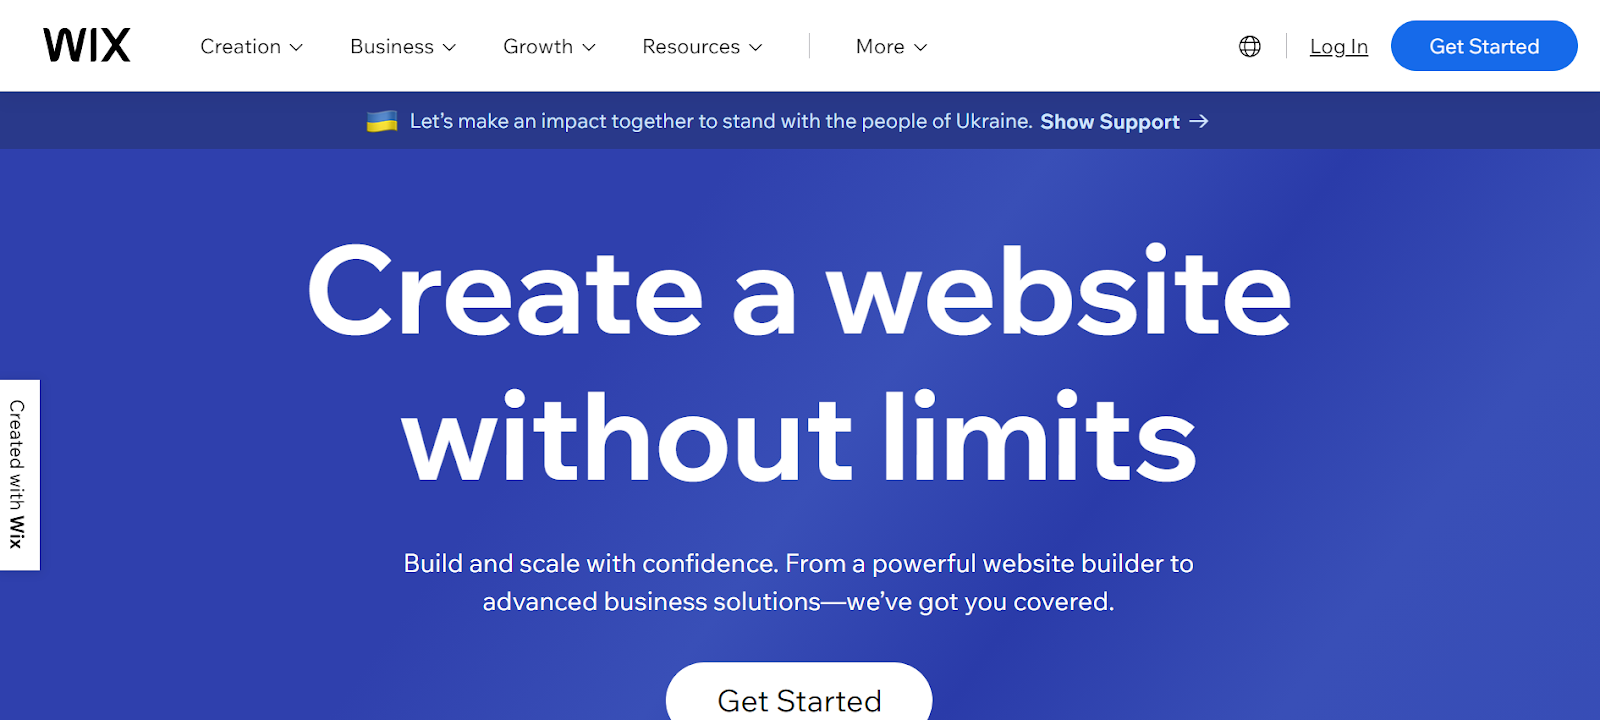 wix website builder for kids